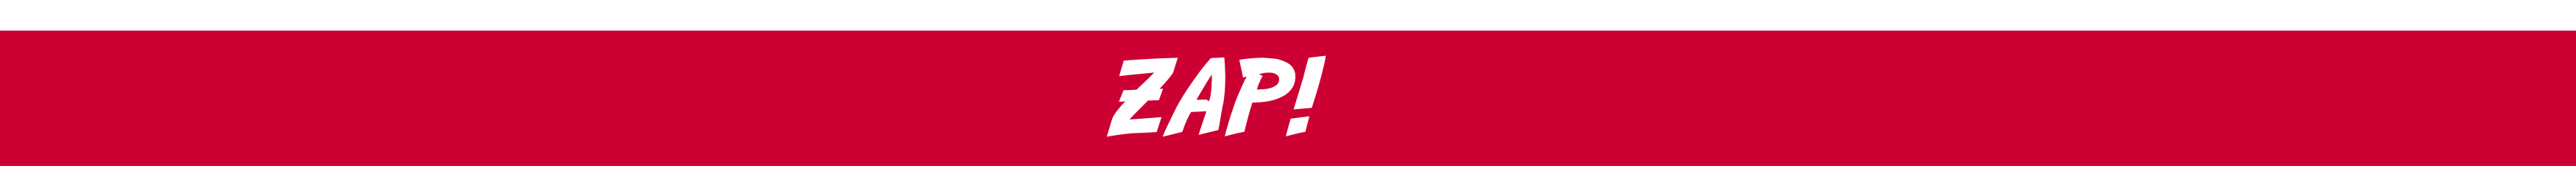 Zap Sponsor Banner 2016